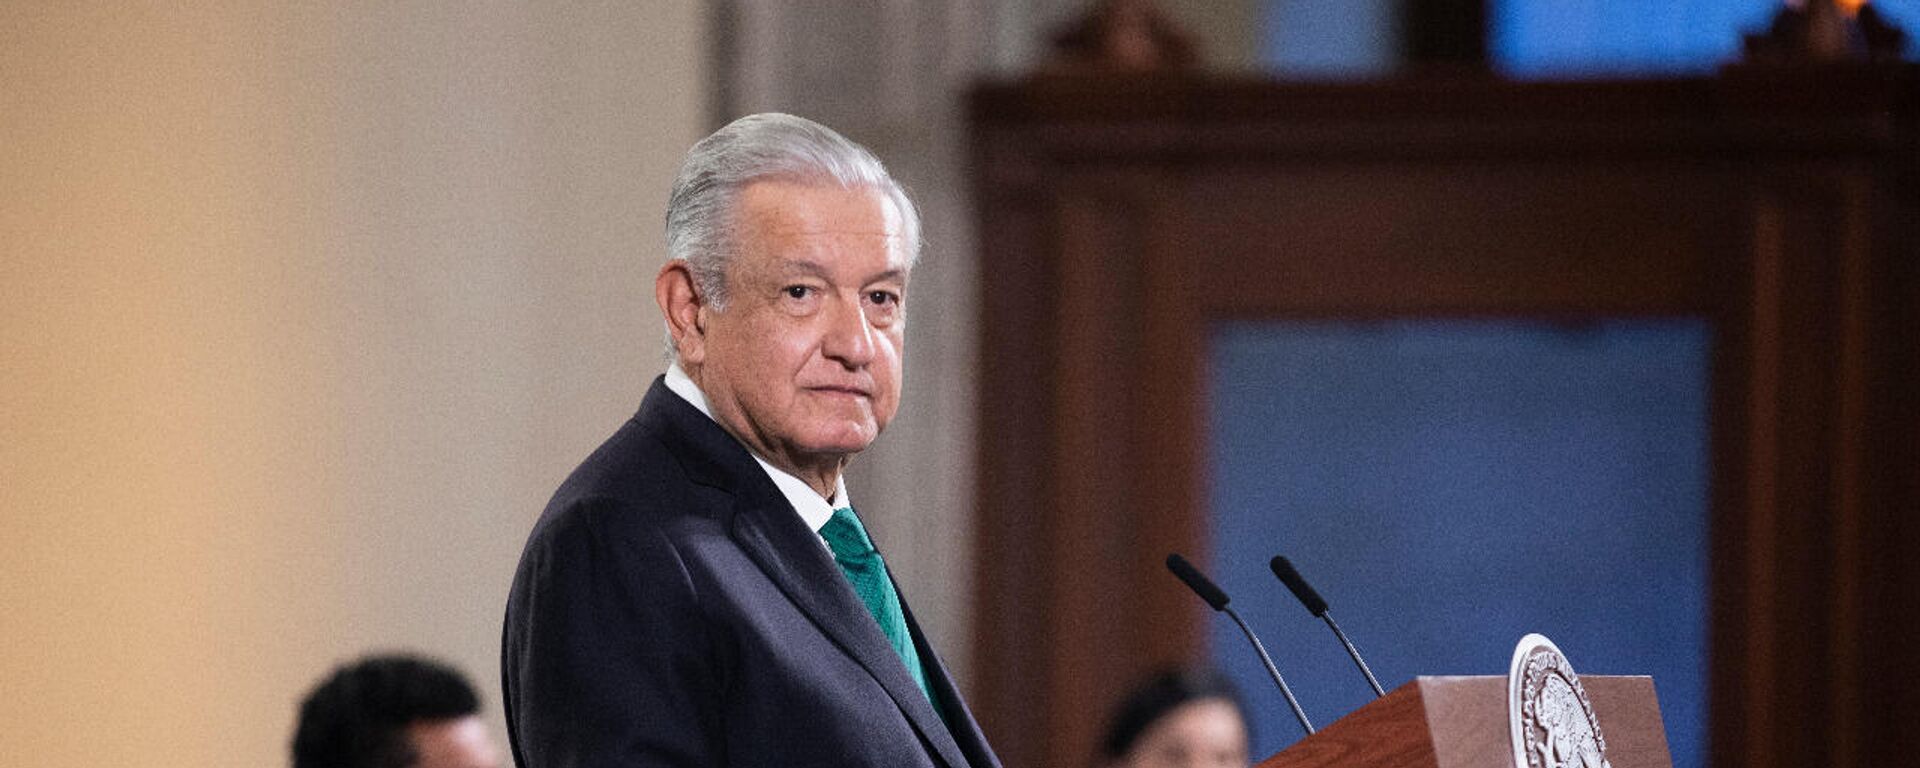 Andrés Manuel López Obrador, presidente de México. - Sputnik Mundo, 1920, 02.11.2021